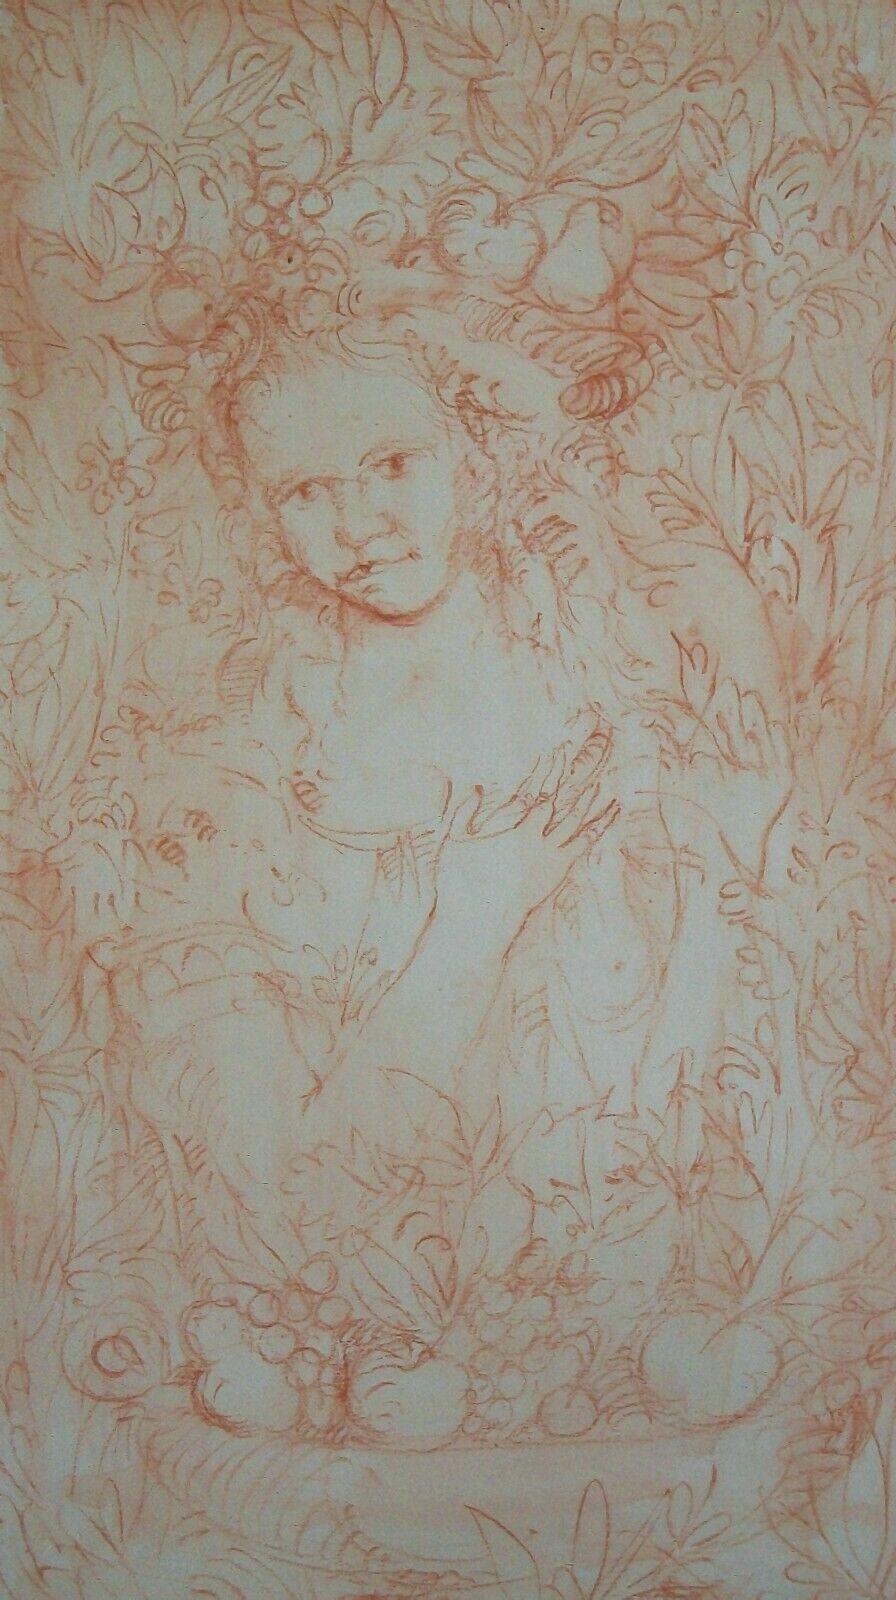 Aquarellierte Rötelzeichnung im Stil der Renaissance auf Papier - mit dem Halbporträt einer jungen Frau in einer bäuerlichen Bluse, die von Pflanzen und Blättern umgeben ist - im Vordergrund eine Schale mit Früchten - dünne helle Graphitstiftlinie